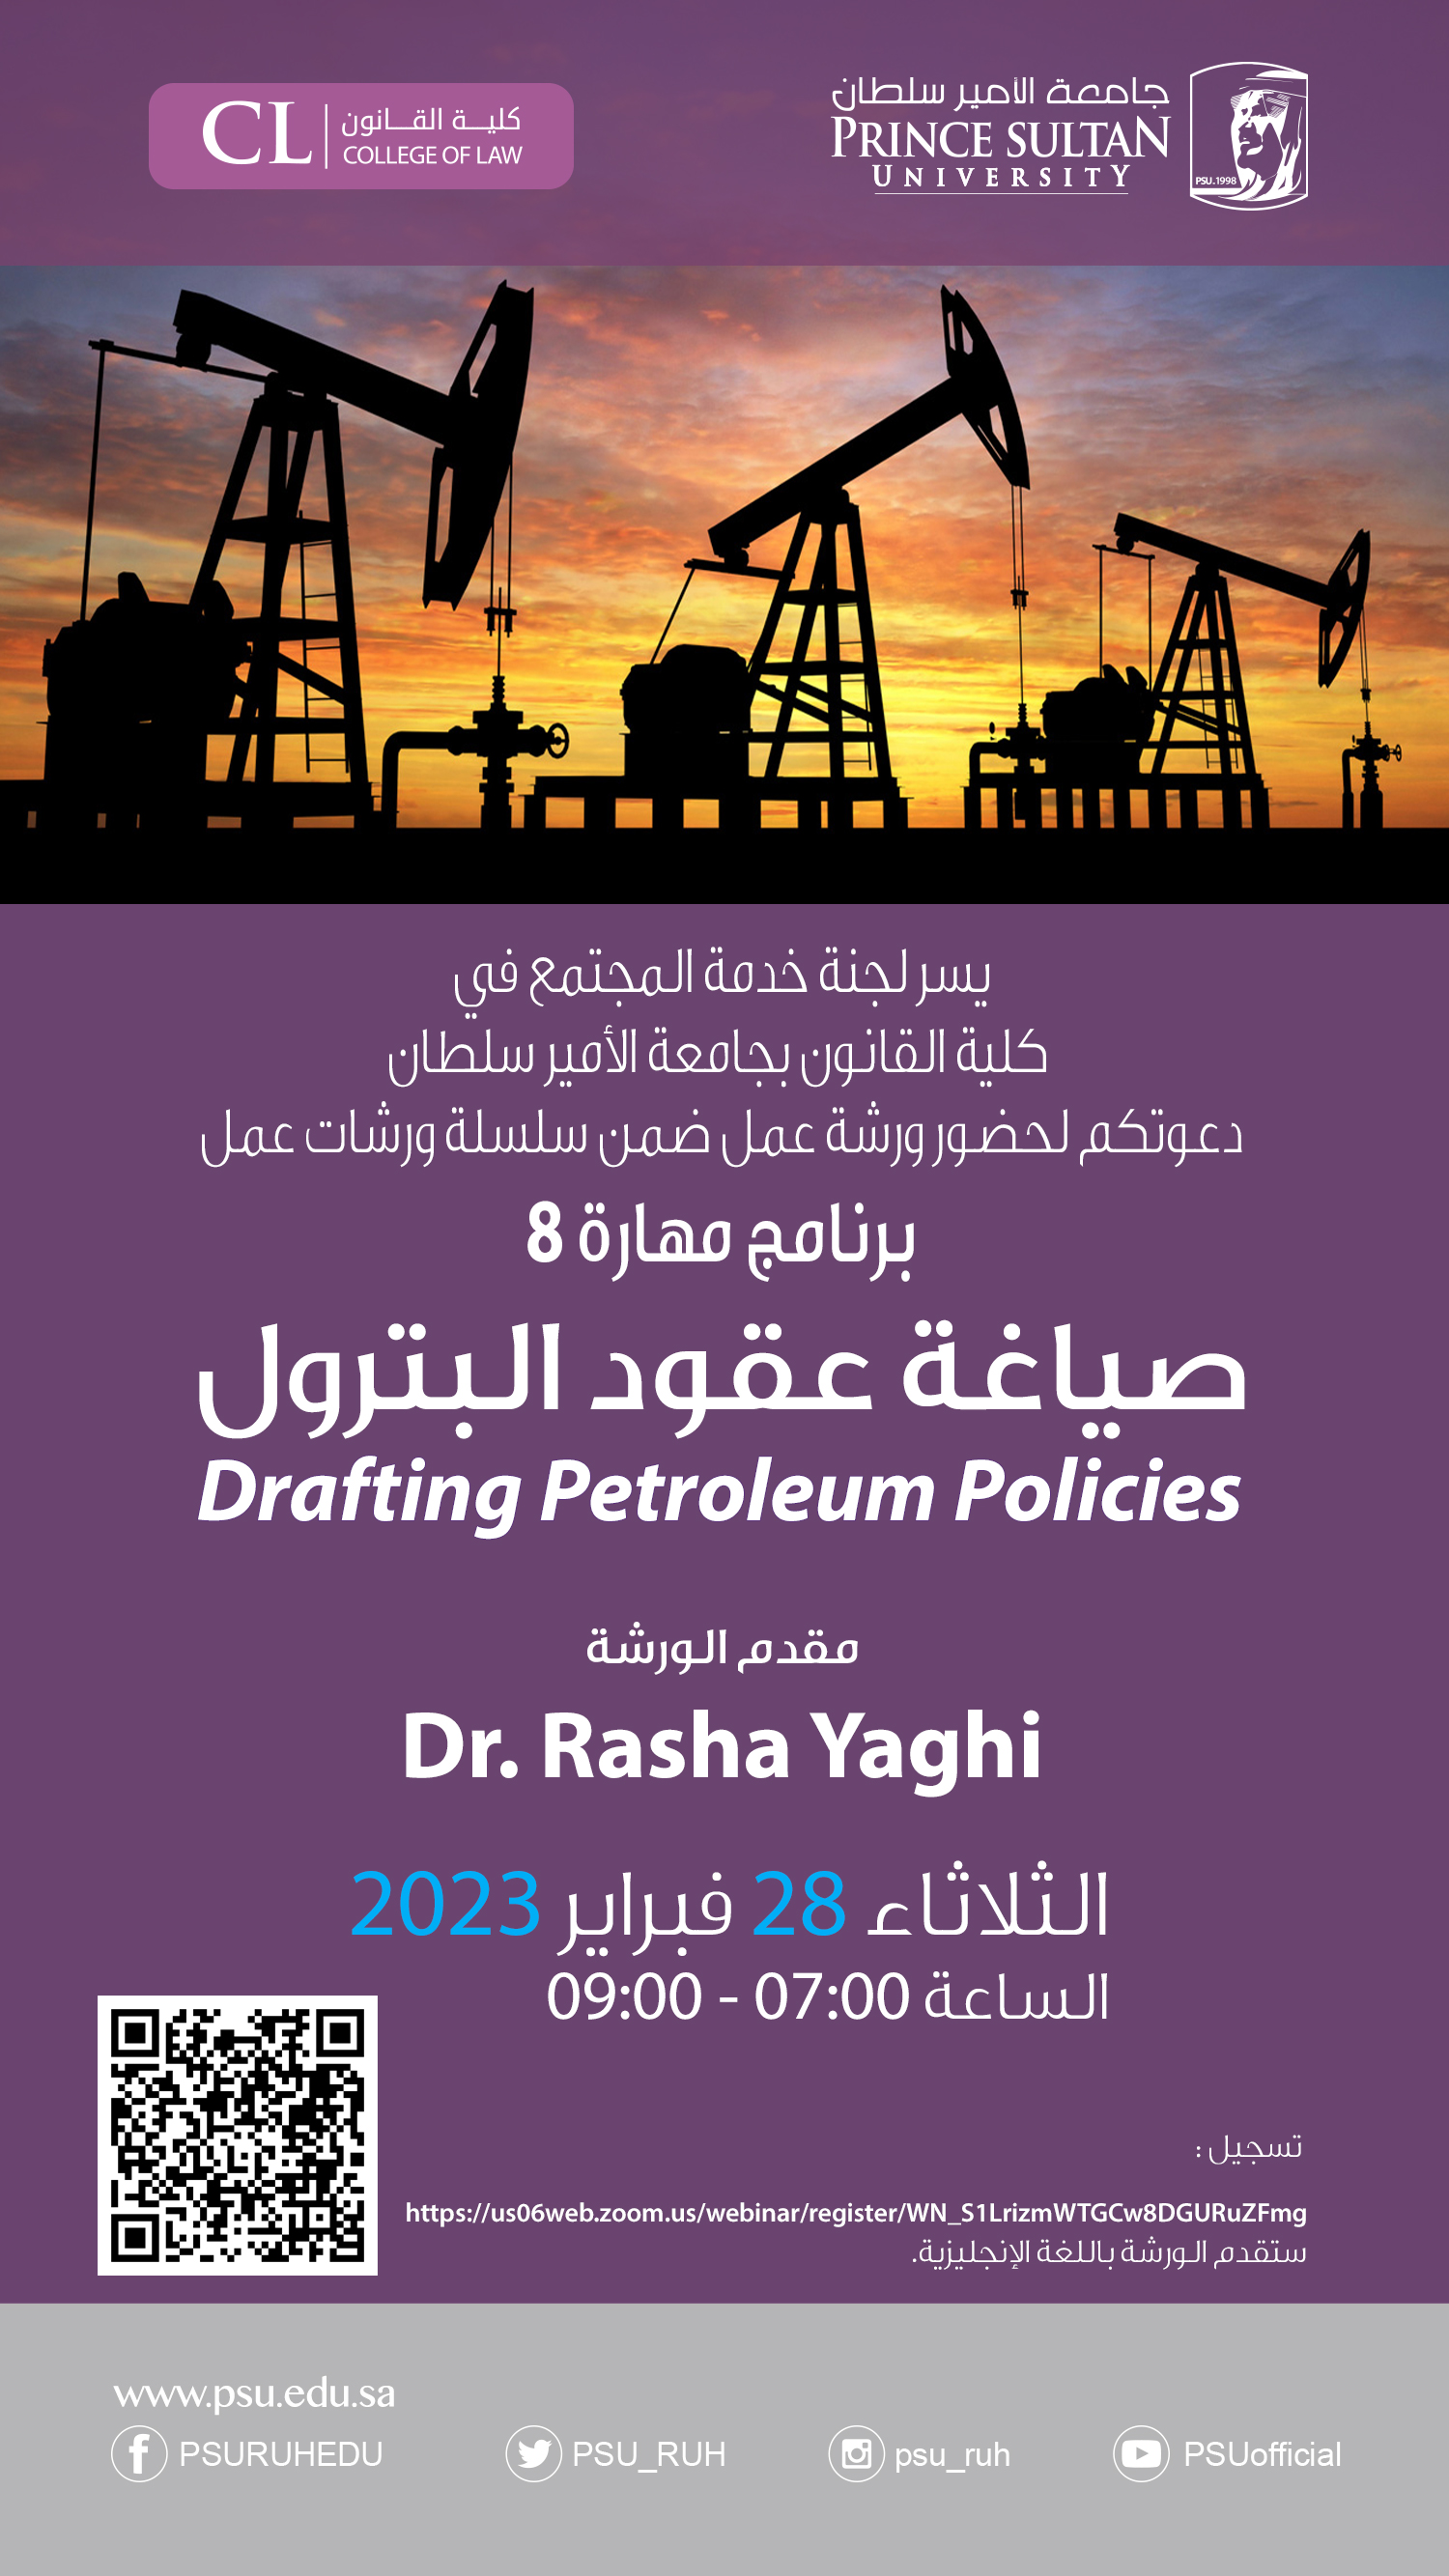 Workshop on "Drafting Petroleum Policies"